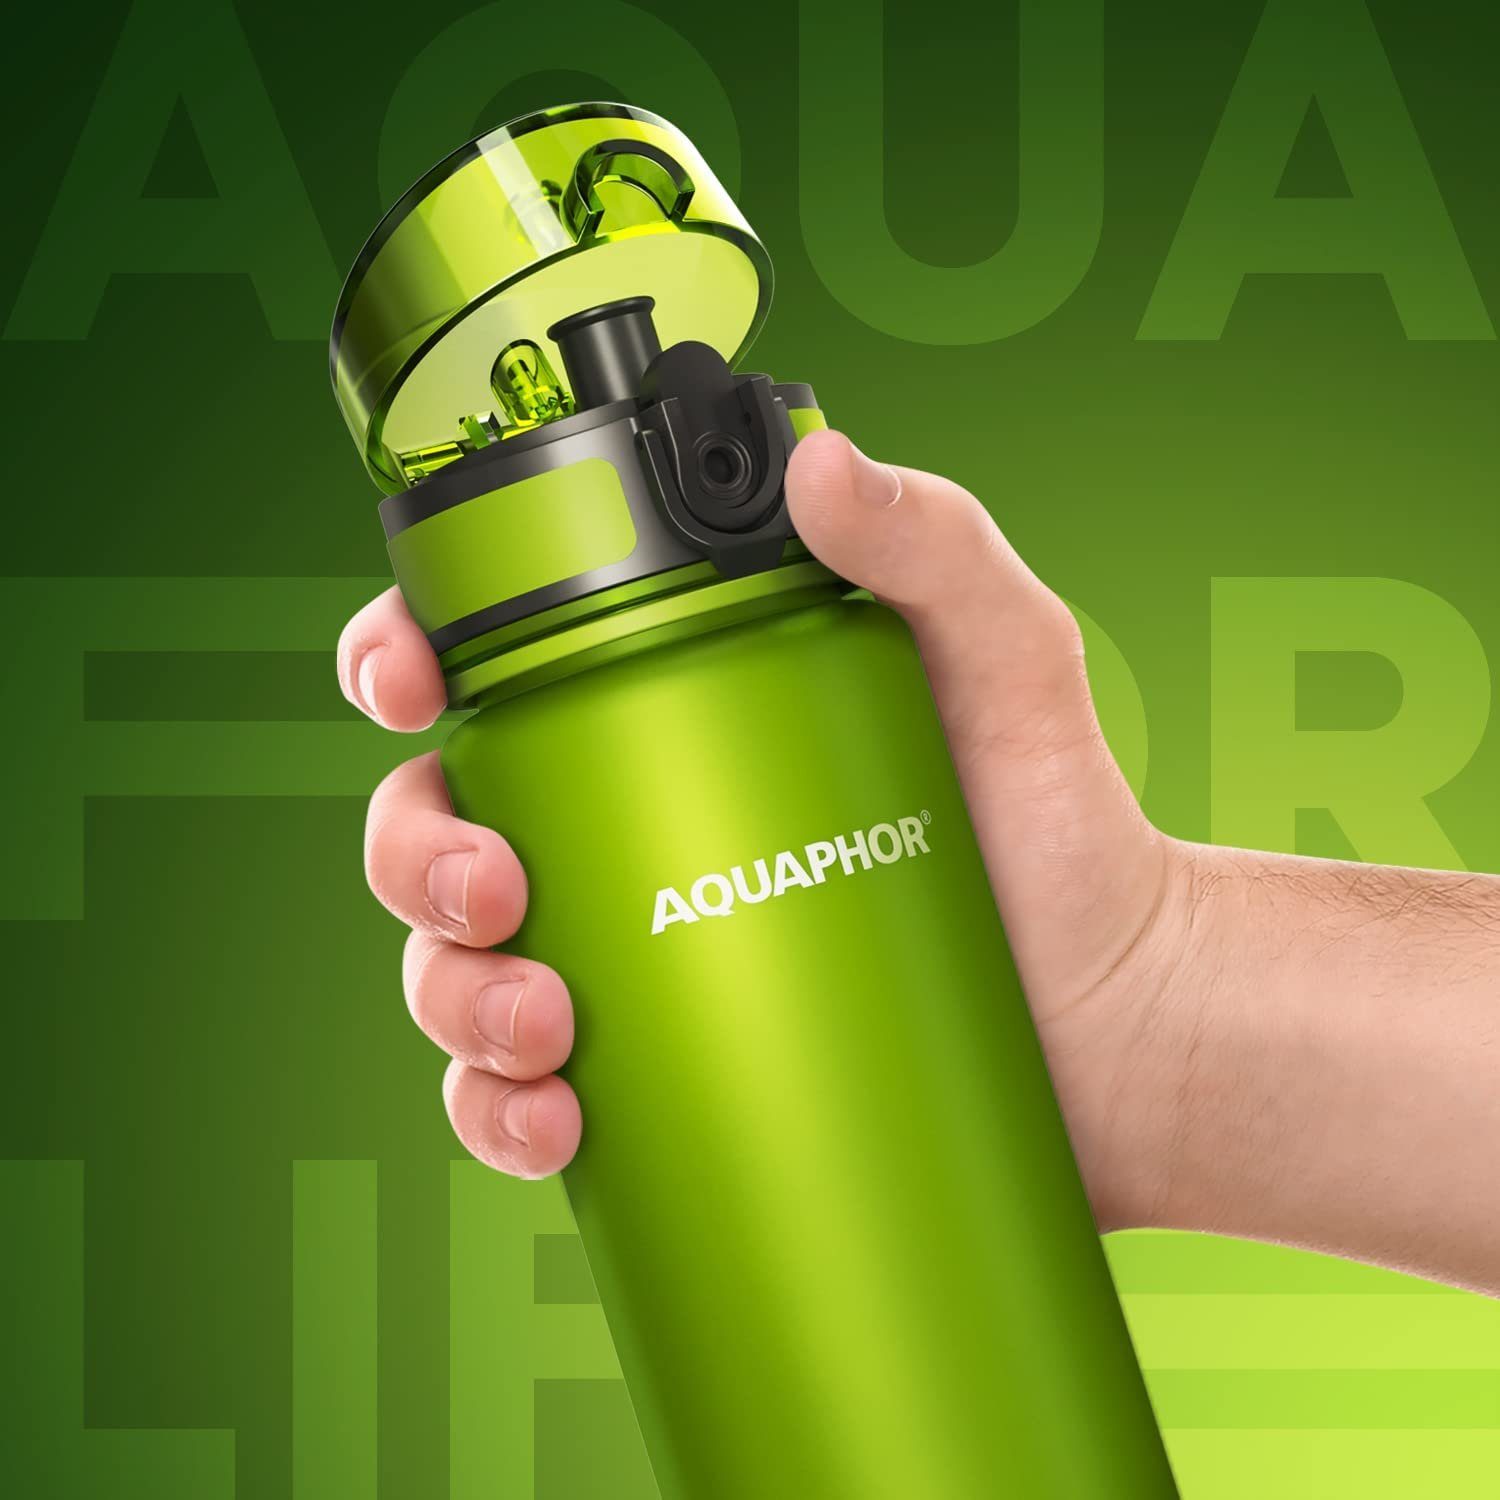 AQUAPHOR mit Wasserfilter Aus CITY & Trinkflasche für Tritan Filter Flasche mit 500ml. lime I BPA-frei, unterwegs, Aktivkohle I Farbe: